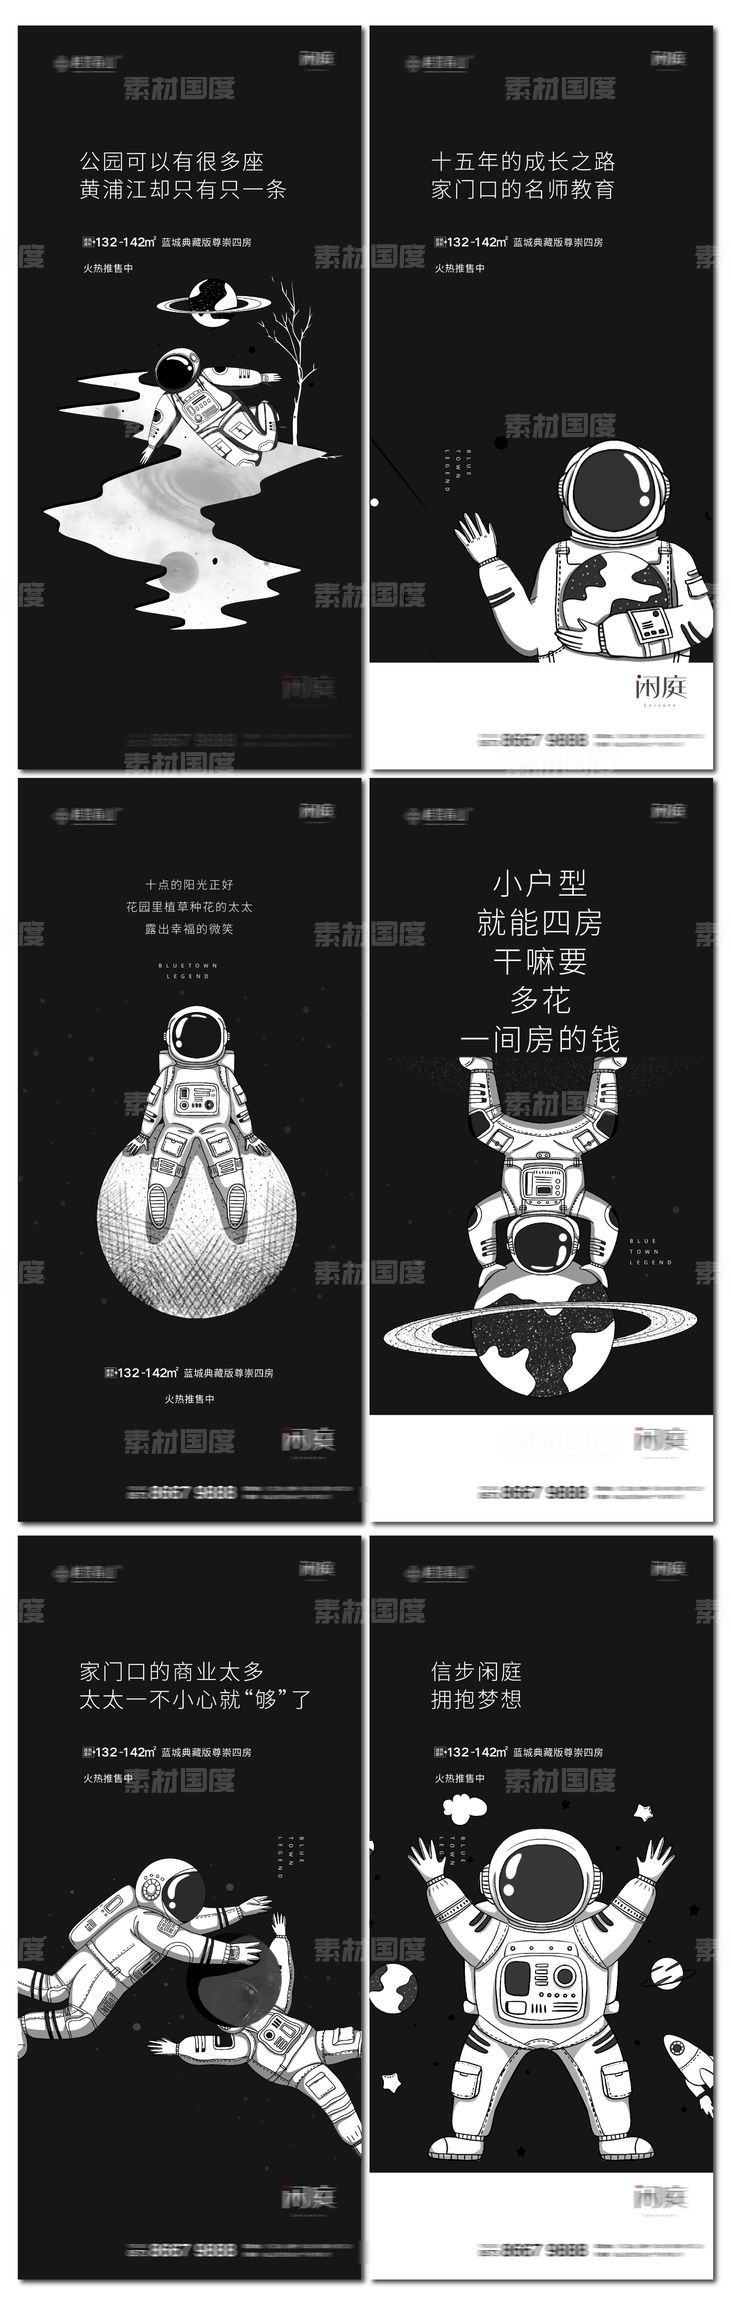 地产价值系列宇航员插画风格海报